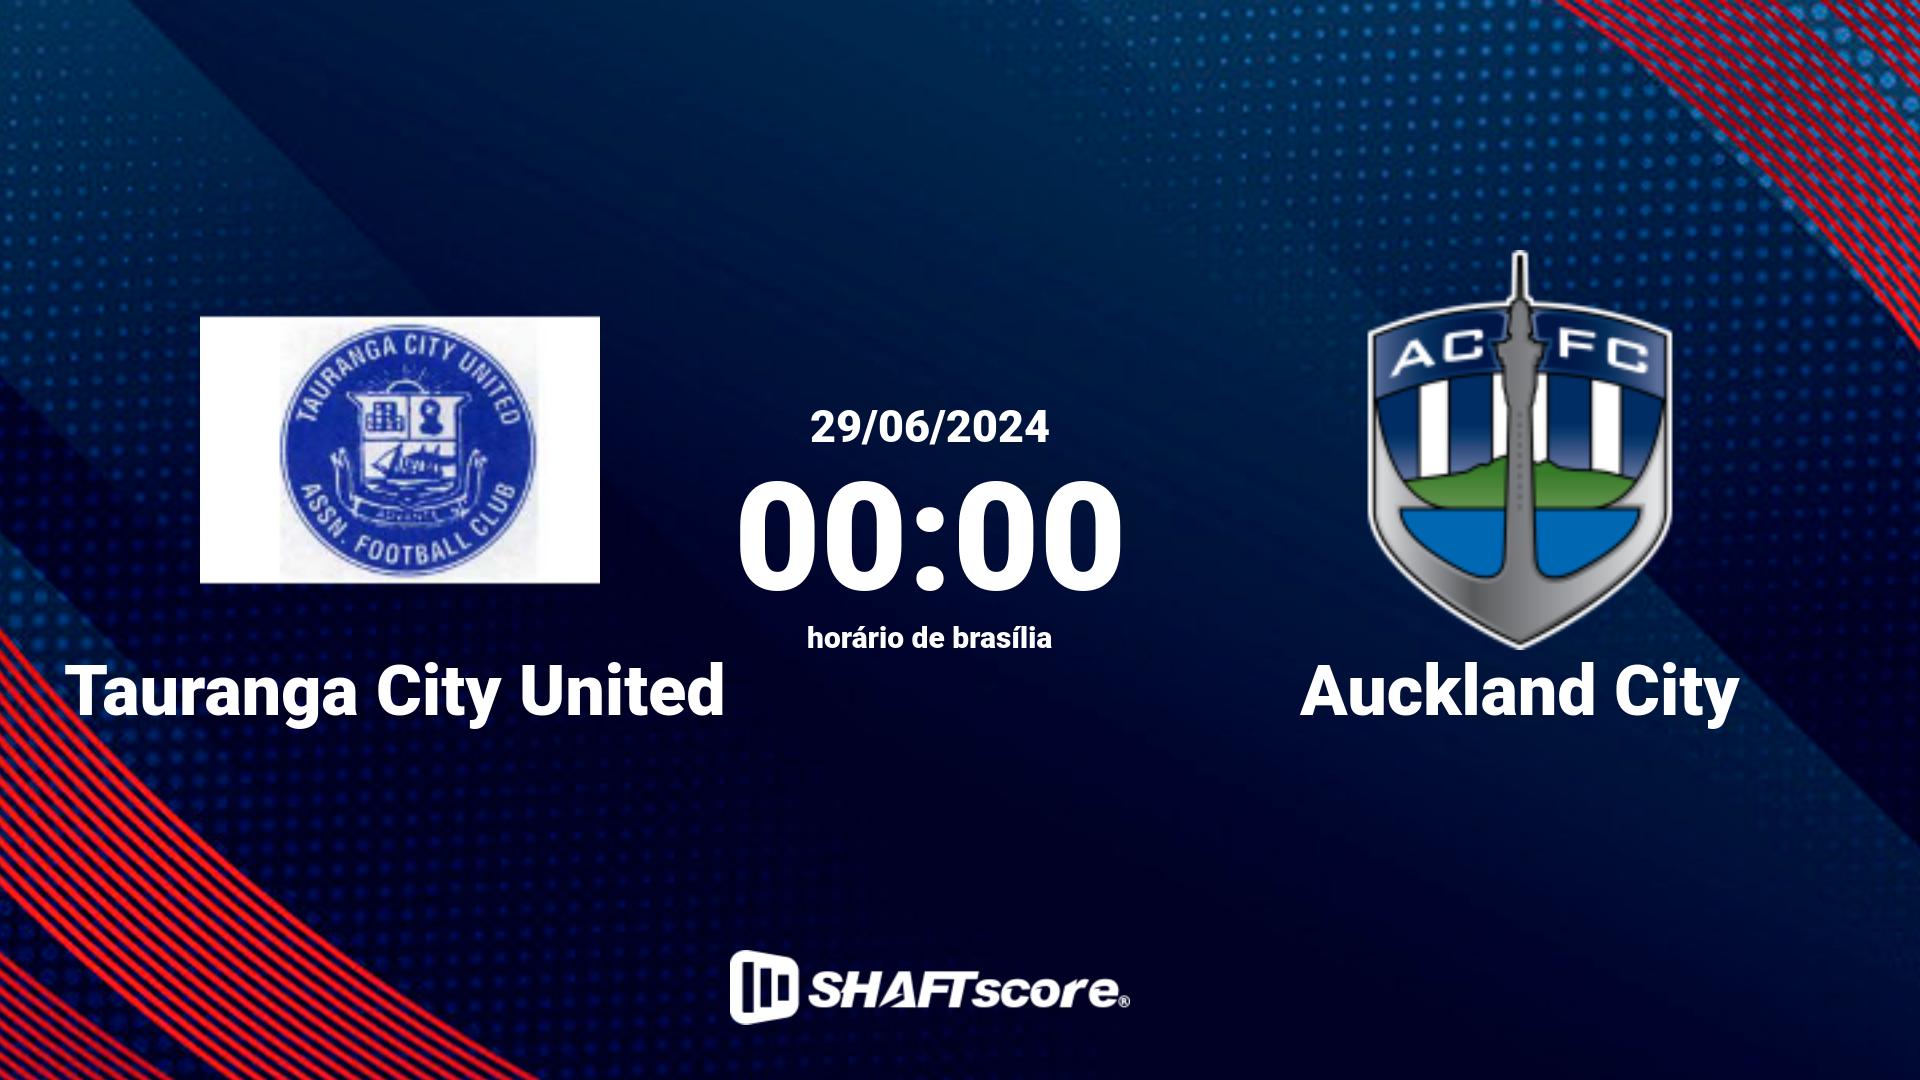 Estatísticas do jogo Tauranga City United vs Auckland City 29.06 00:00